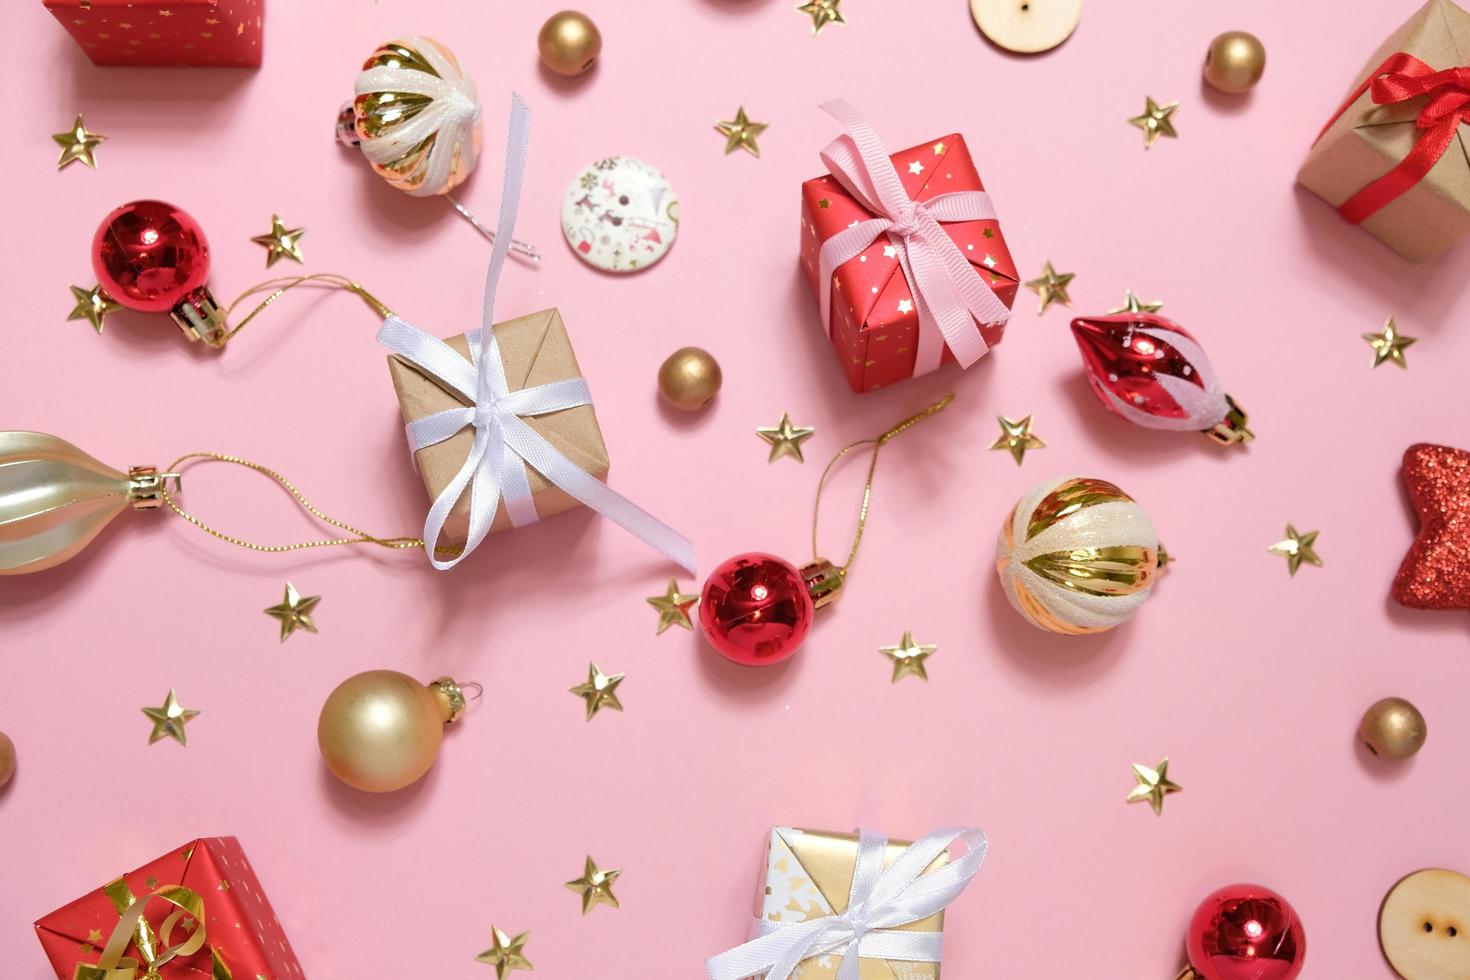 Fondo de navidad con adornos y cajas de regalo sobre fondo rosa foto